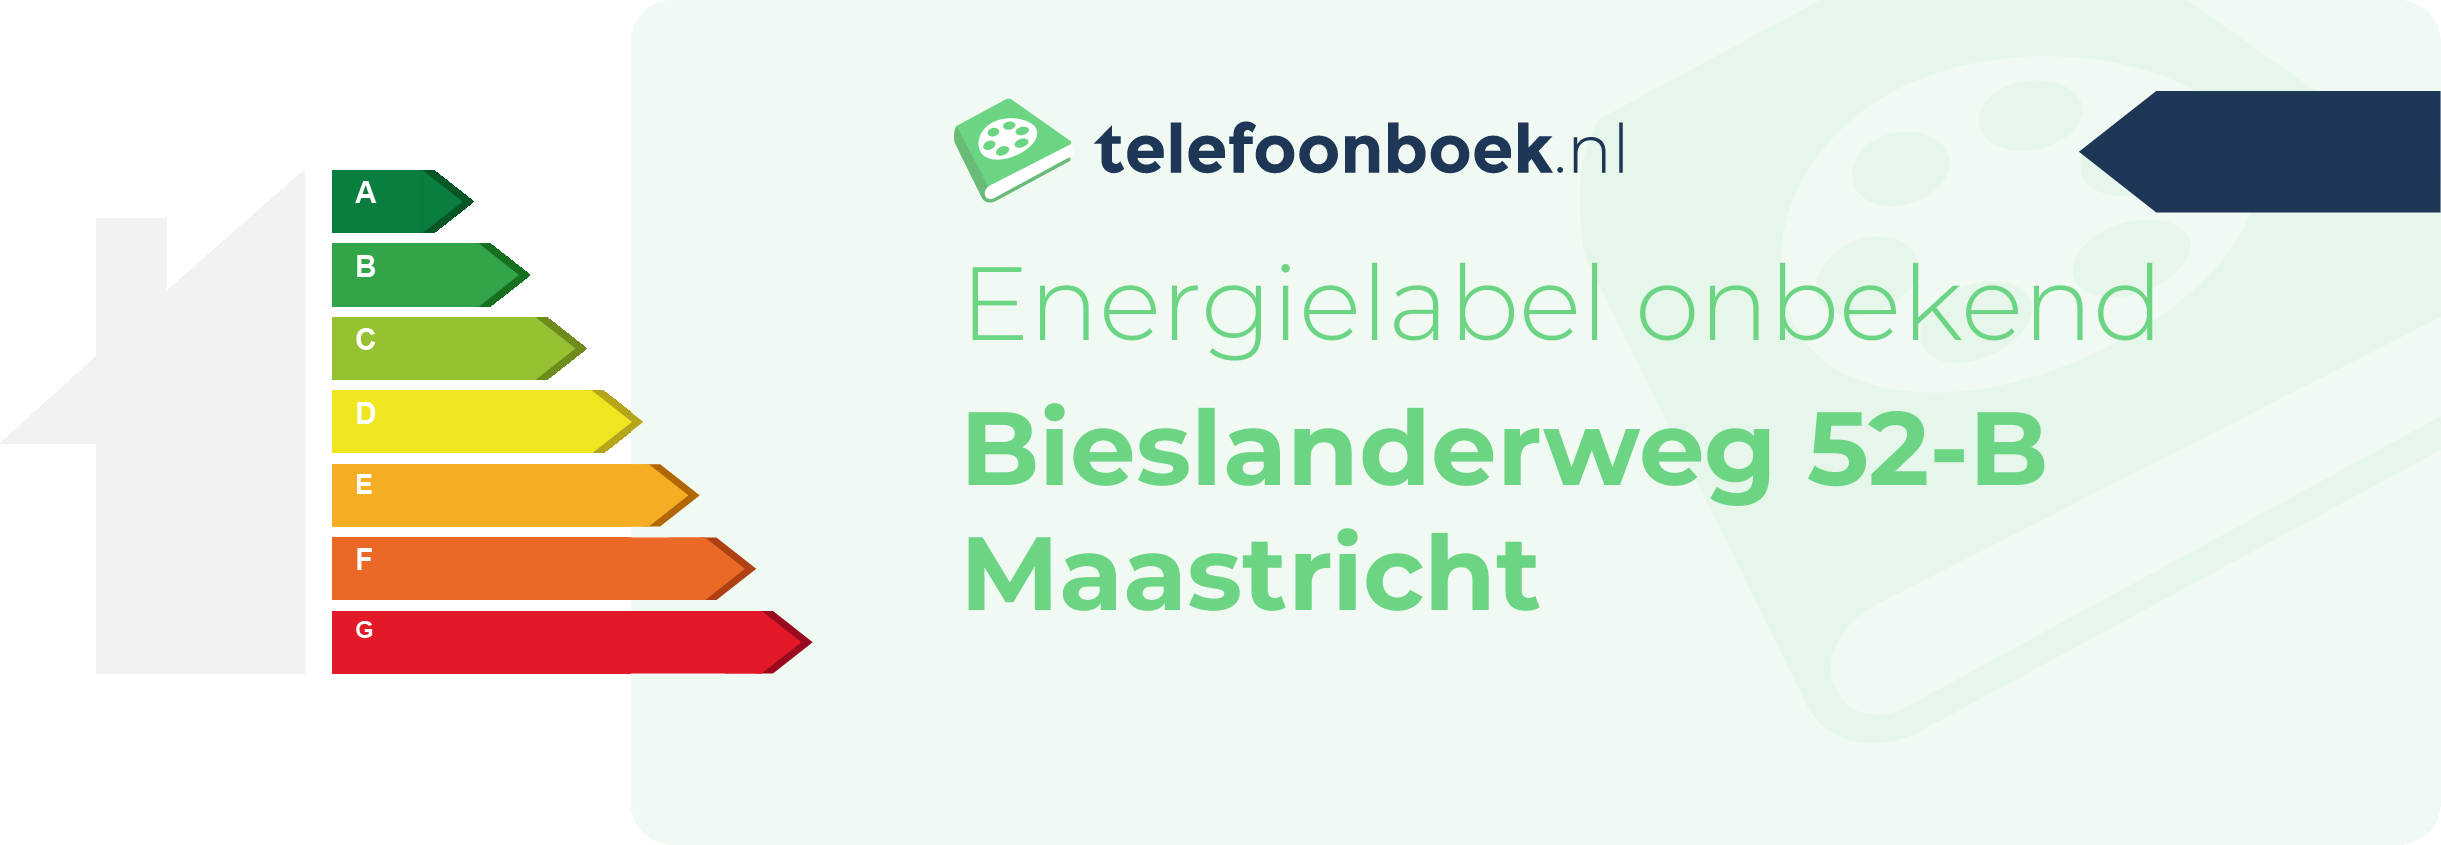 Energielabel Bieslanderweg 52-B Maastricht